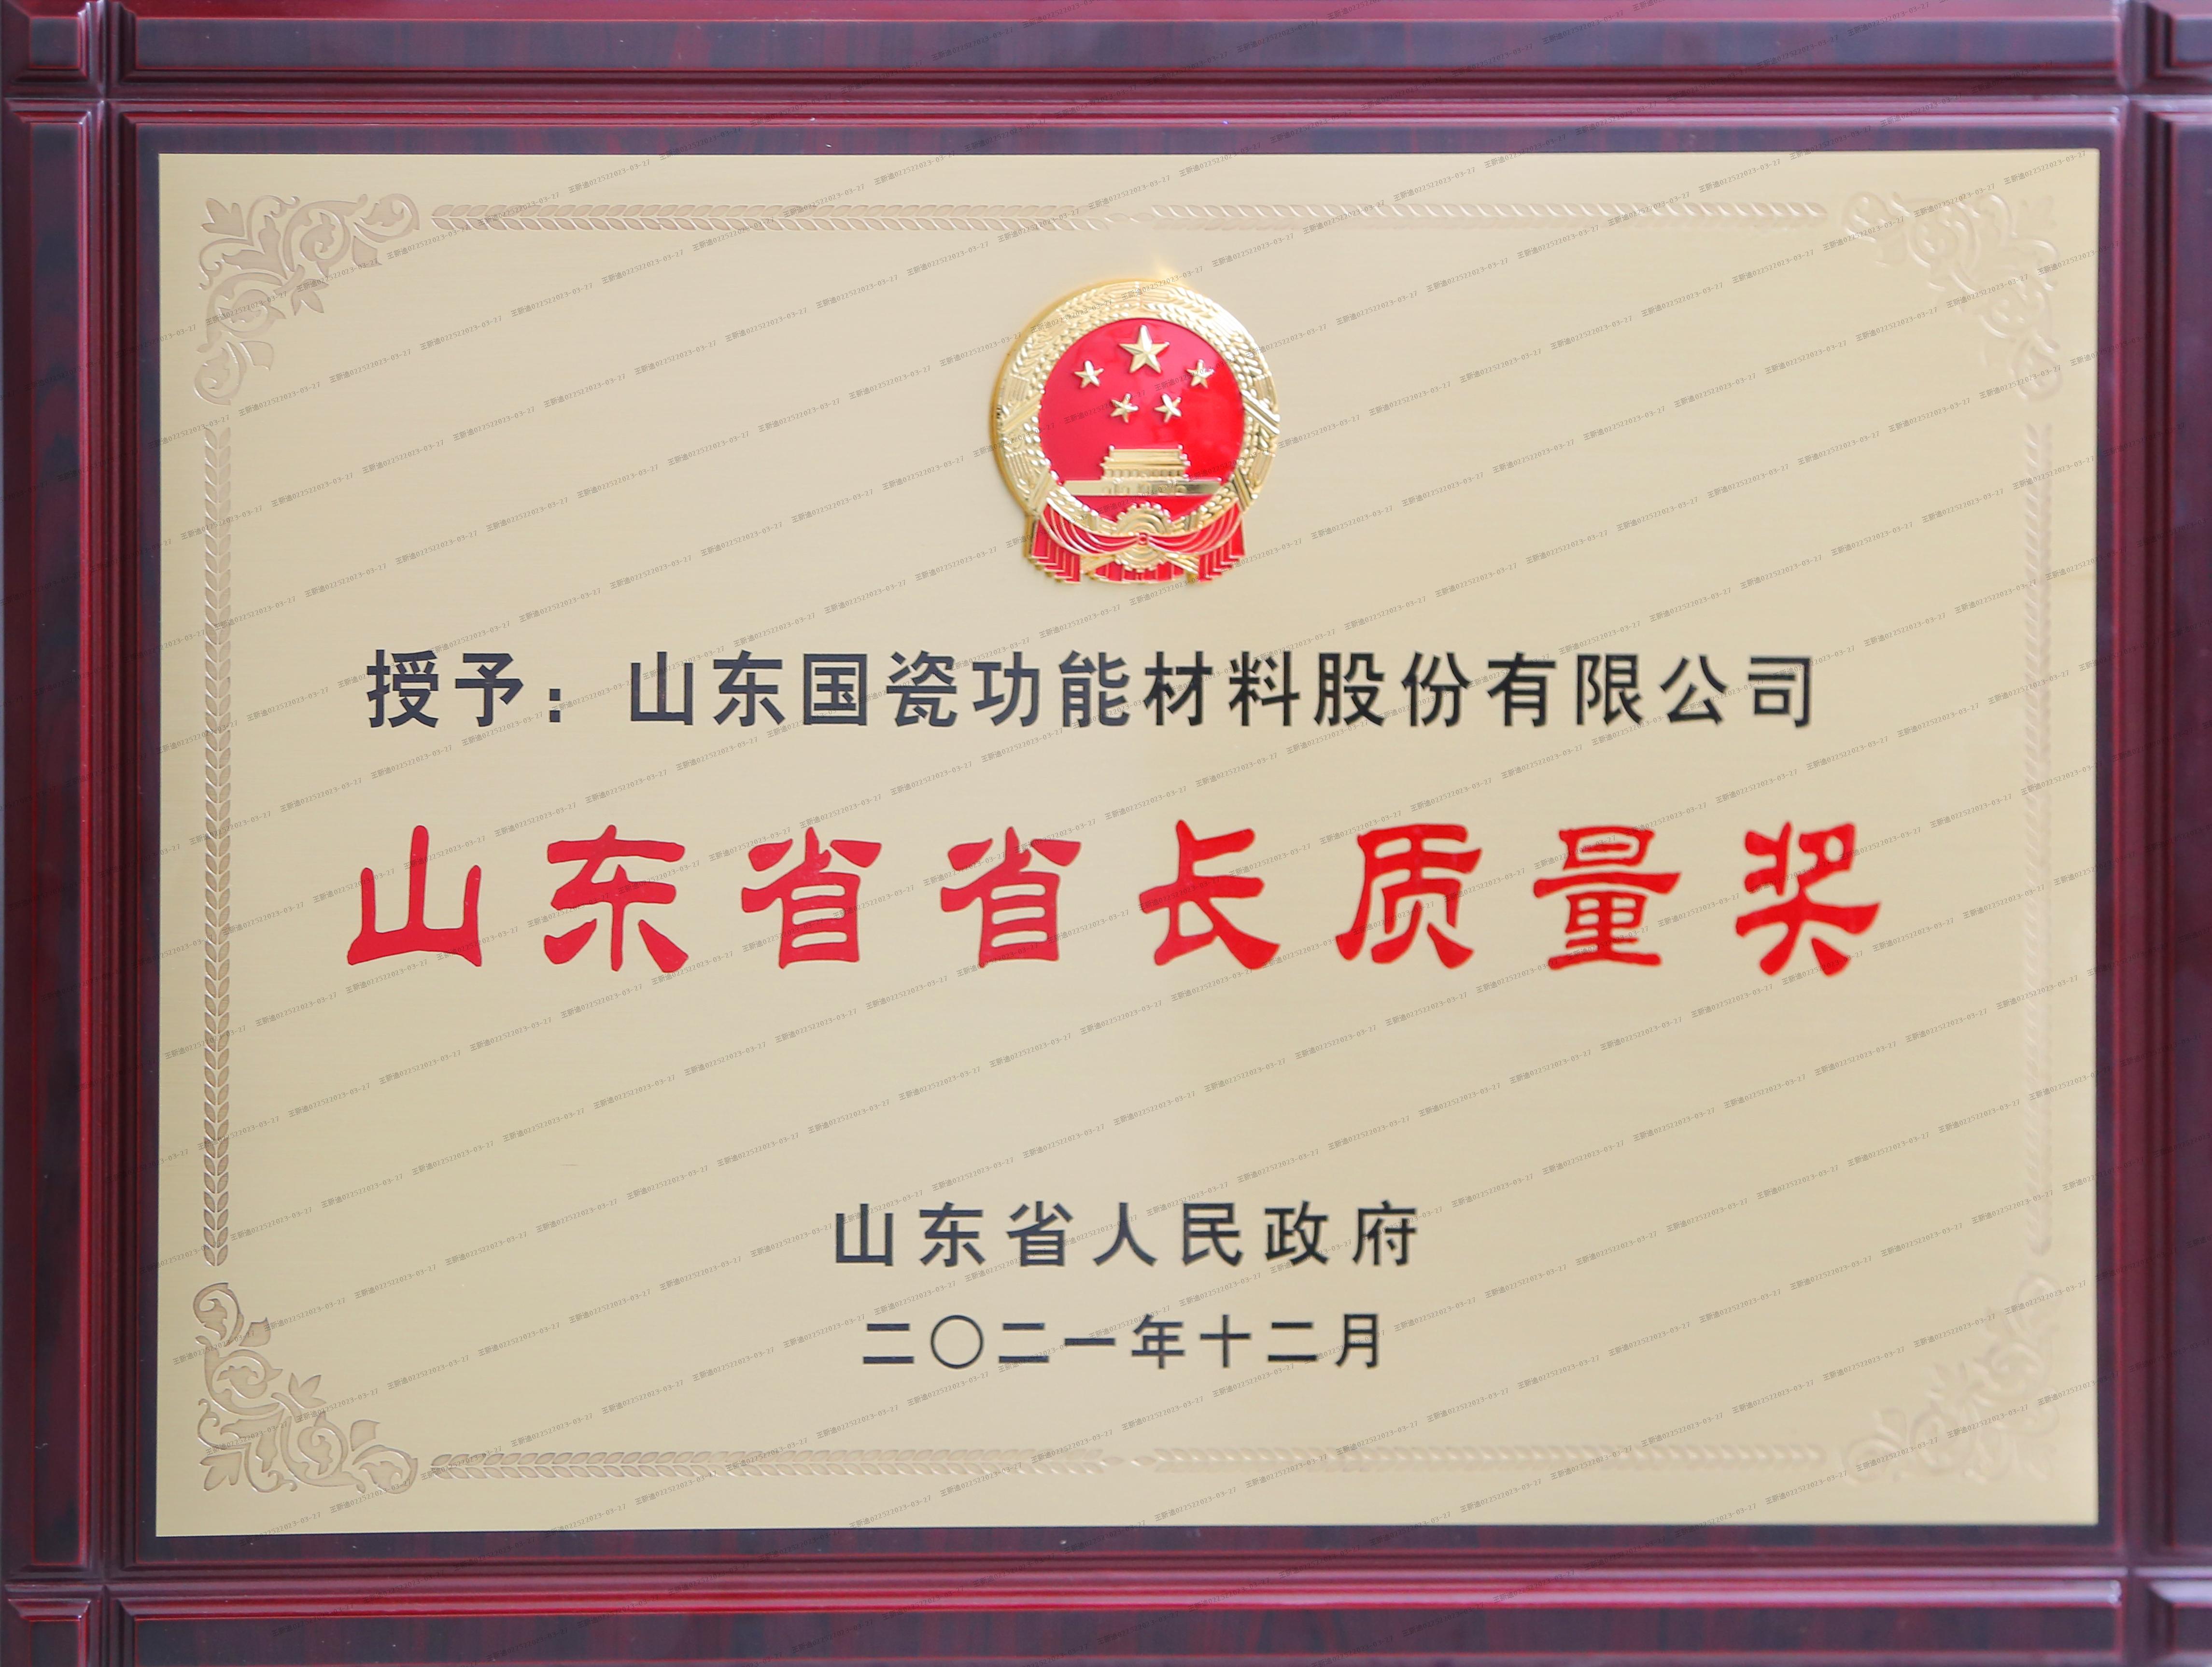 國瓷材料榮獲第八屆山東省省長質量獎